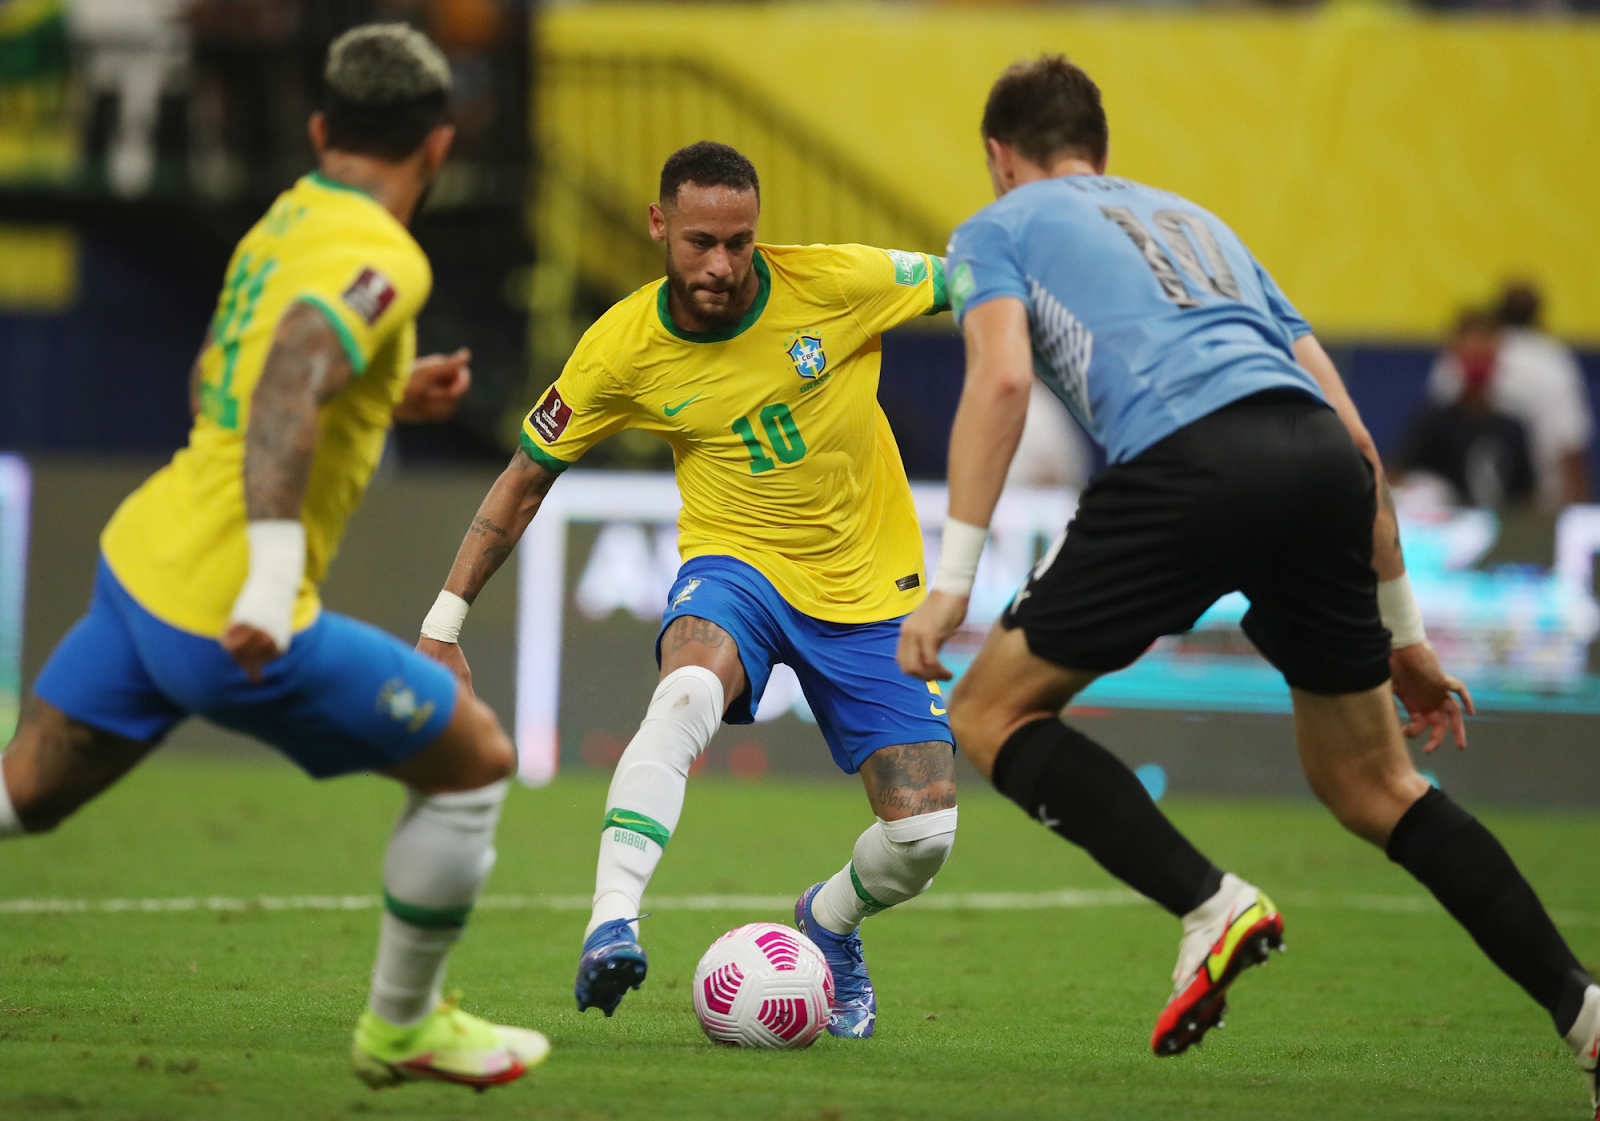 neymar tro thanh cau thu co so luong ban thang nhieu nhat tai vong loai world cup 2022 3827 2 - Neymar trở thành cầu thủ có số lượng bàn thắng nhiều nhất tại vòng loại World Cup 2022